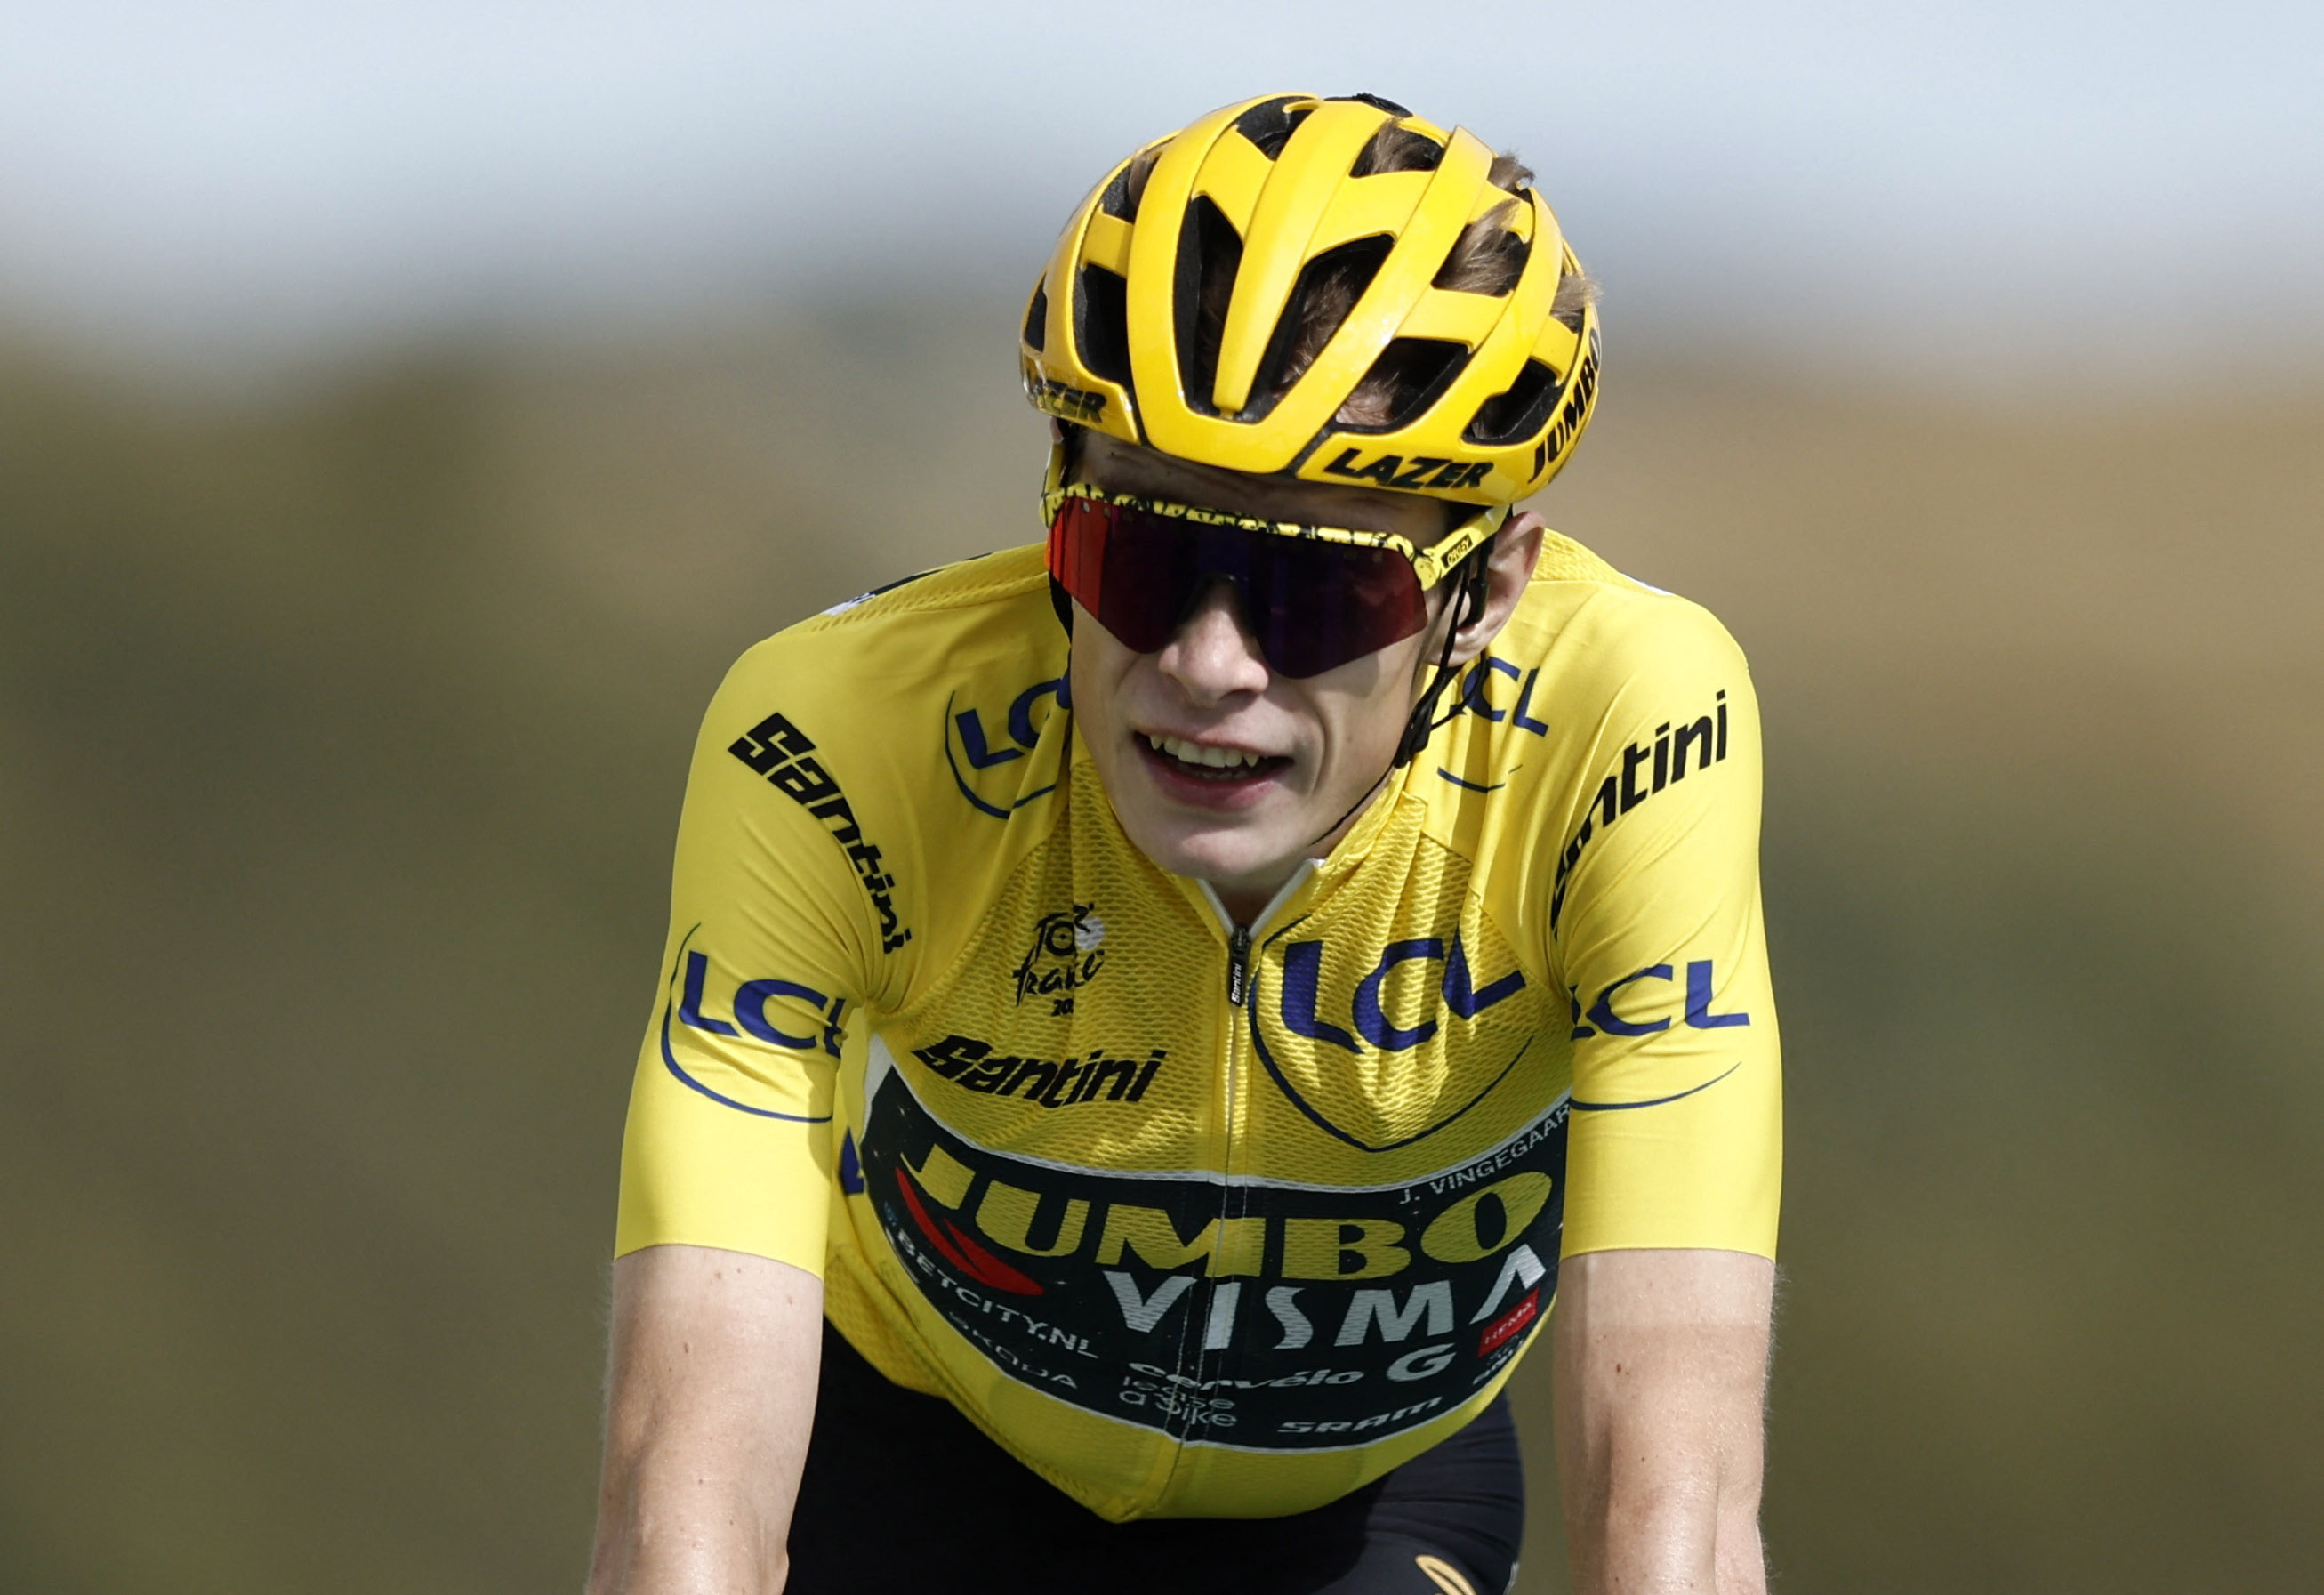 Jonas Vingegaard defends title in 'amazing' Tour de France